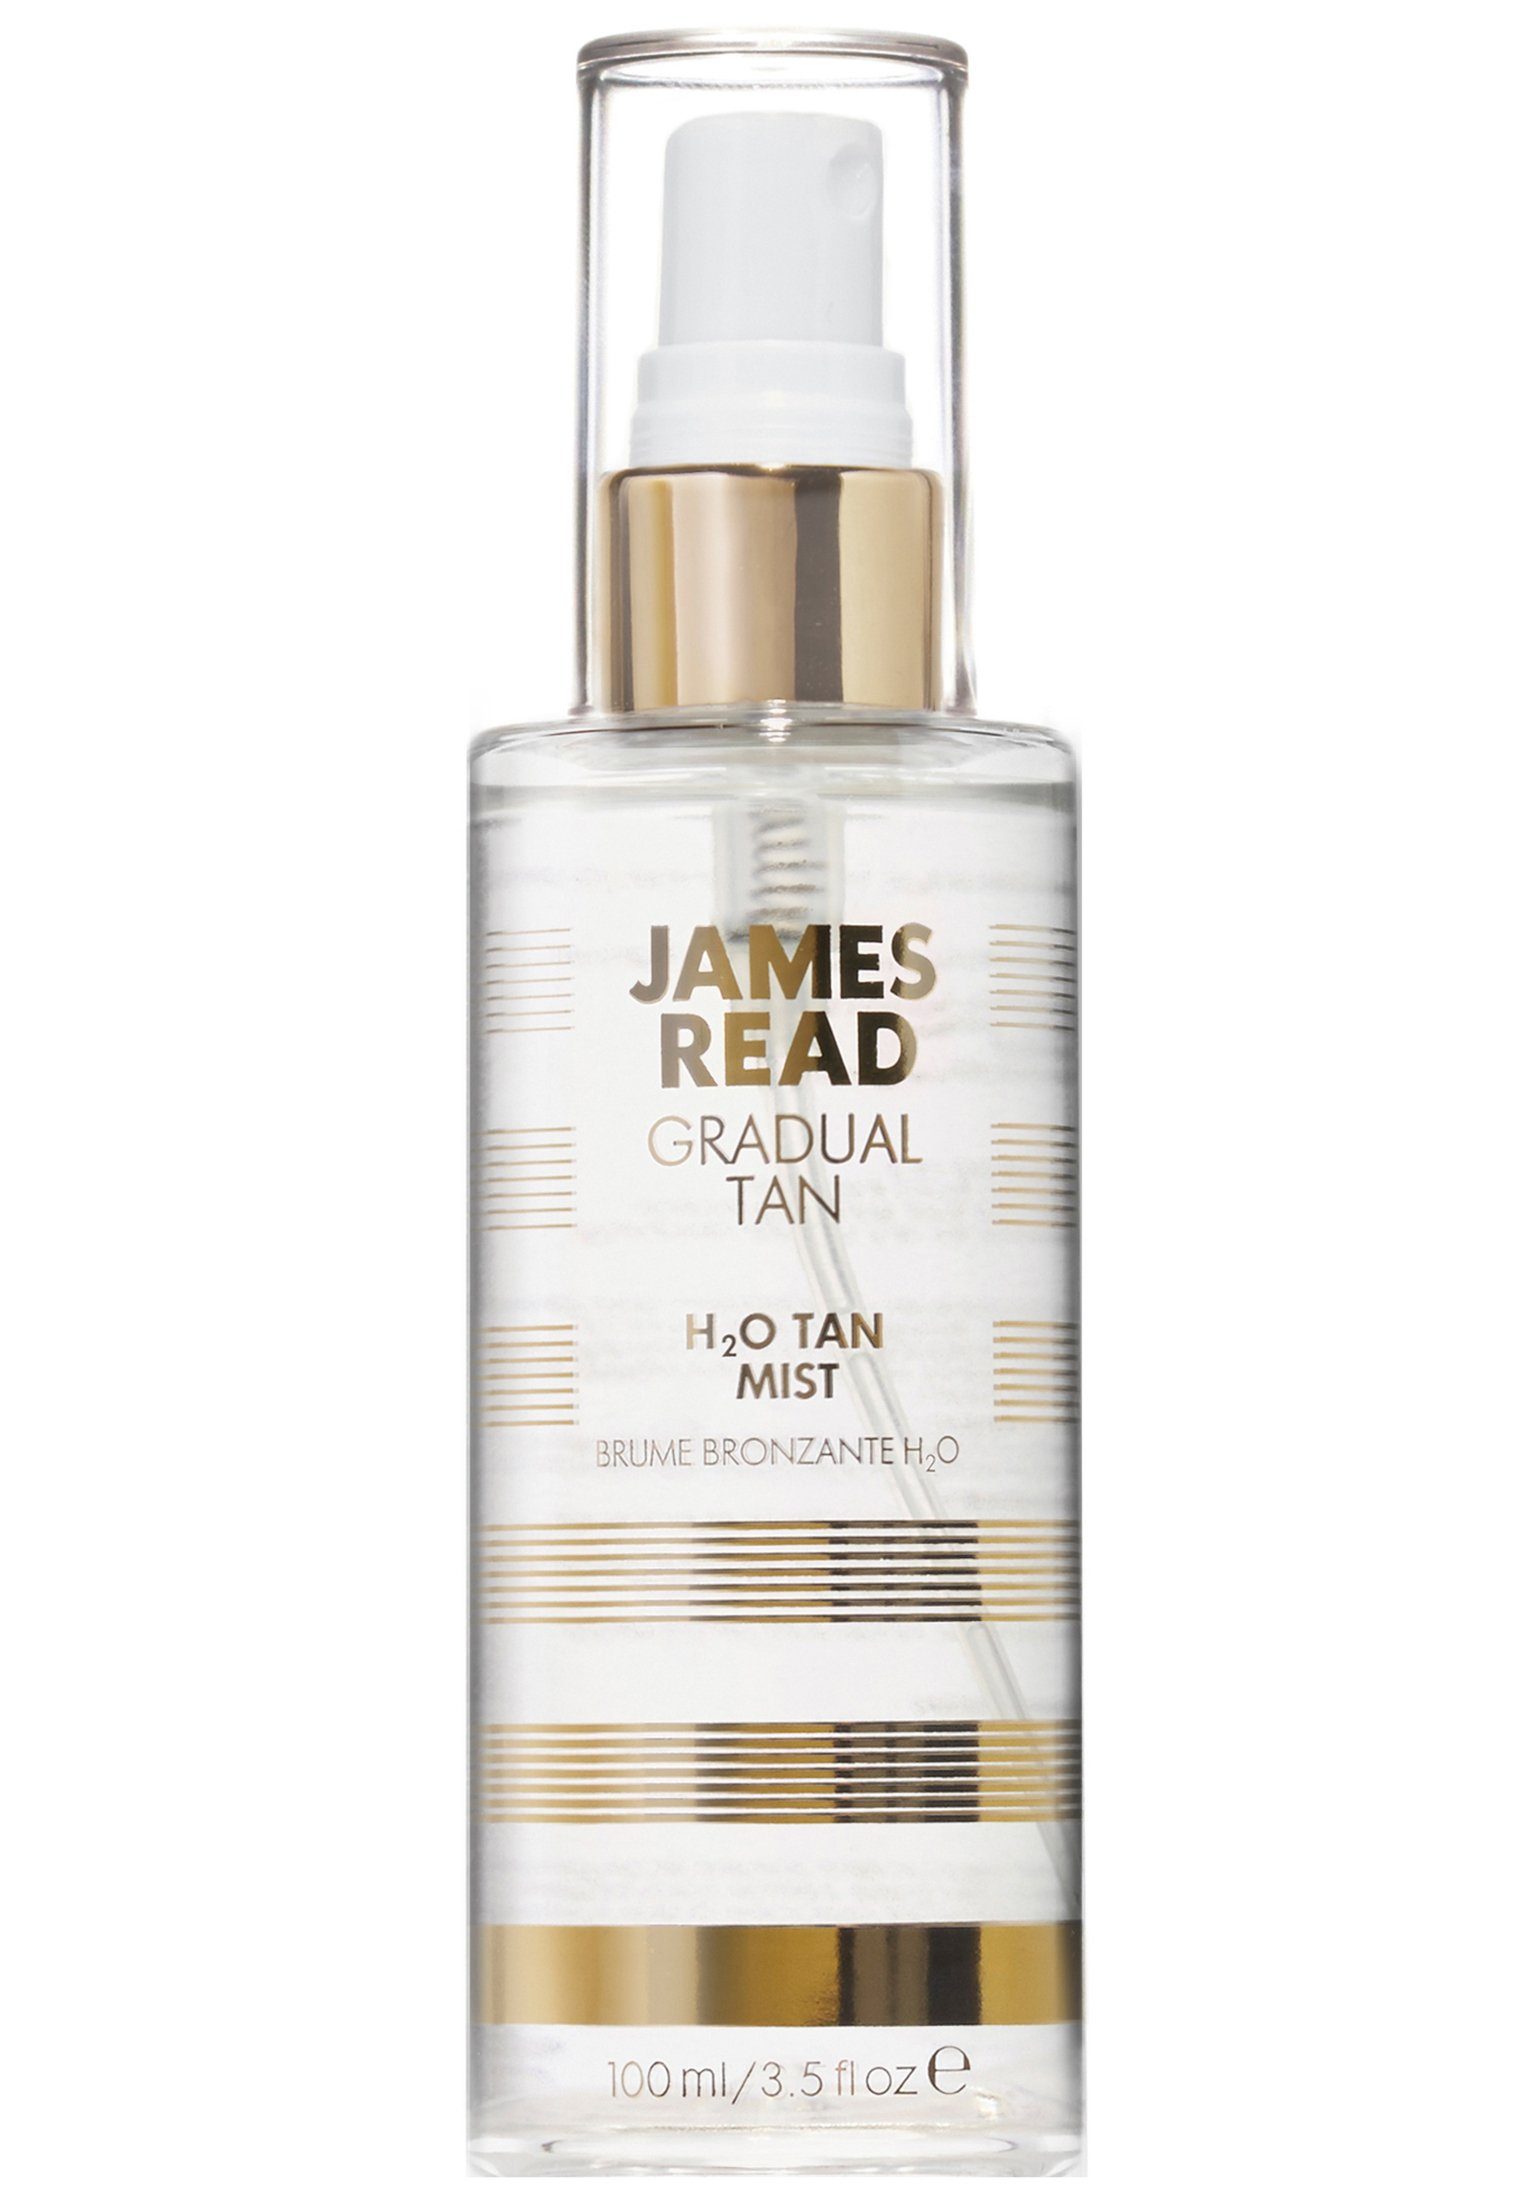 Mist pflegendes Gesichts- und mit Gesichtsspray James James Read Tan Read Körperspray Bräunungseffekt! Erfrischendes, H2O Gesichtsspray